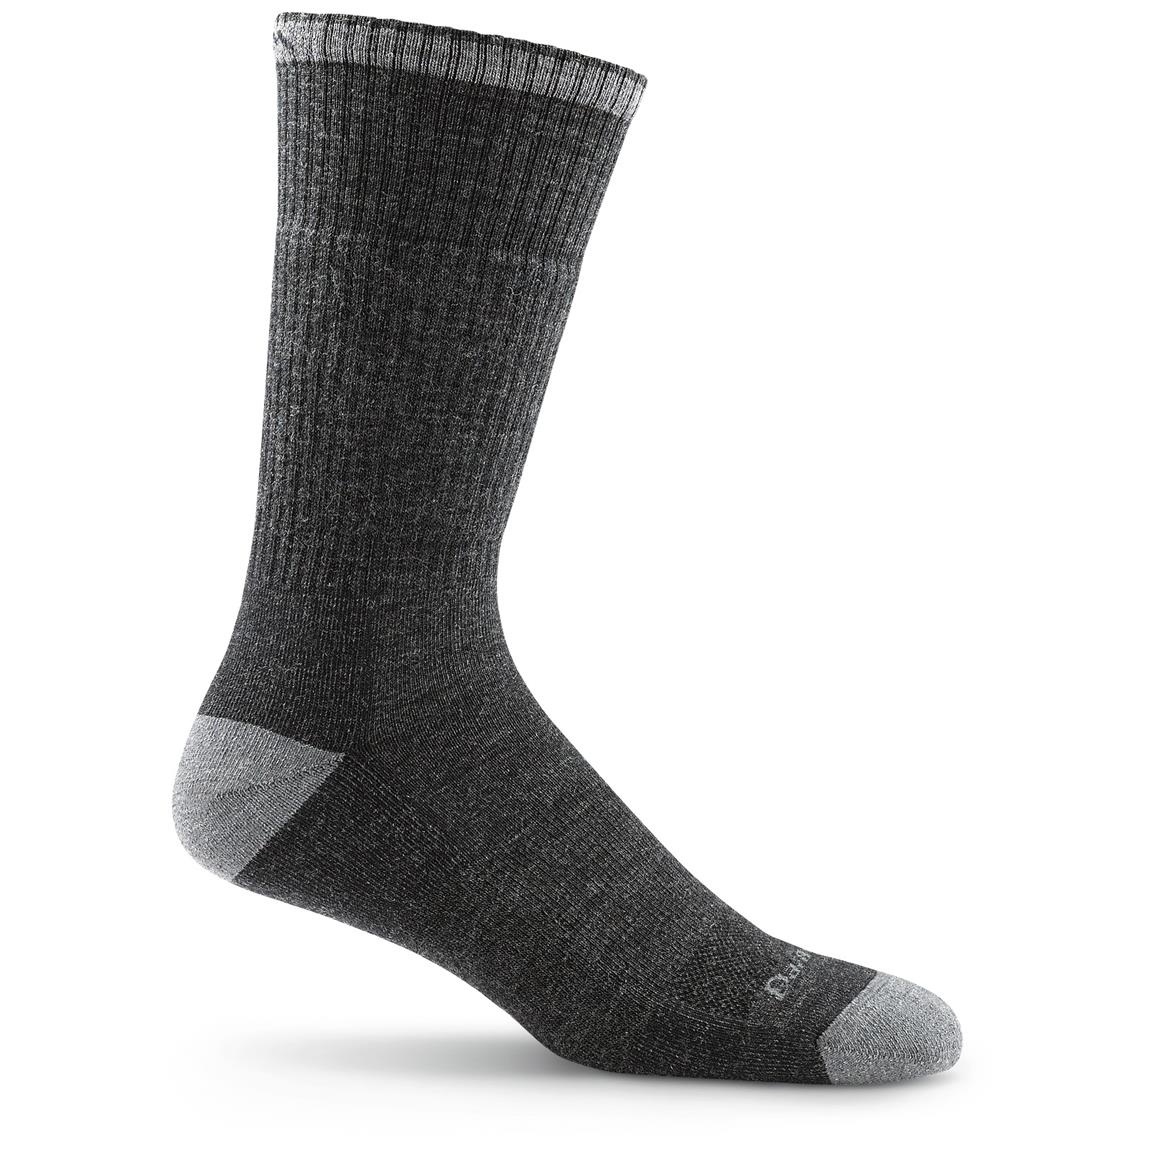 Darn Tough John Henry Boot Socks - 648153, Socks at Sportsman's Guide